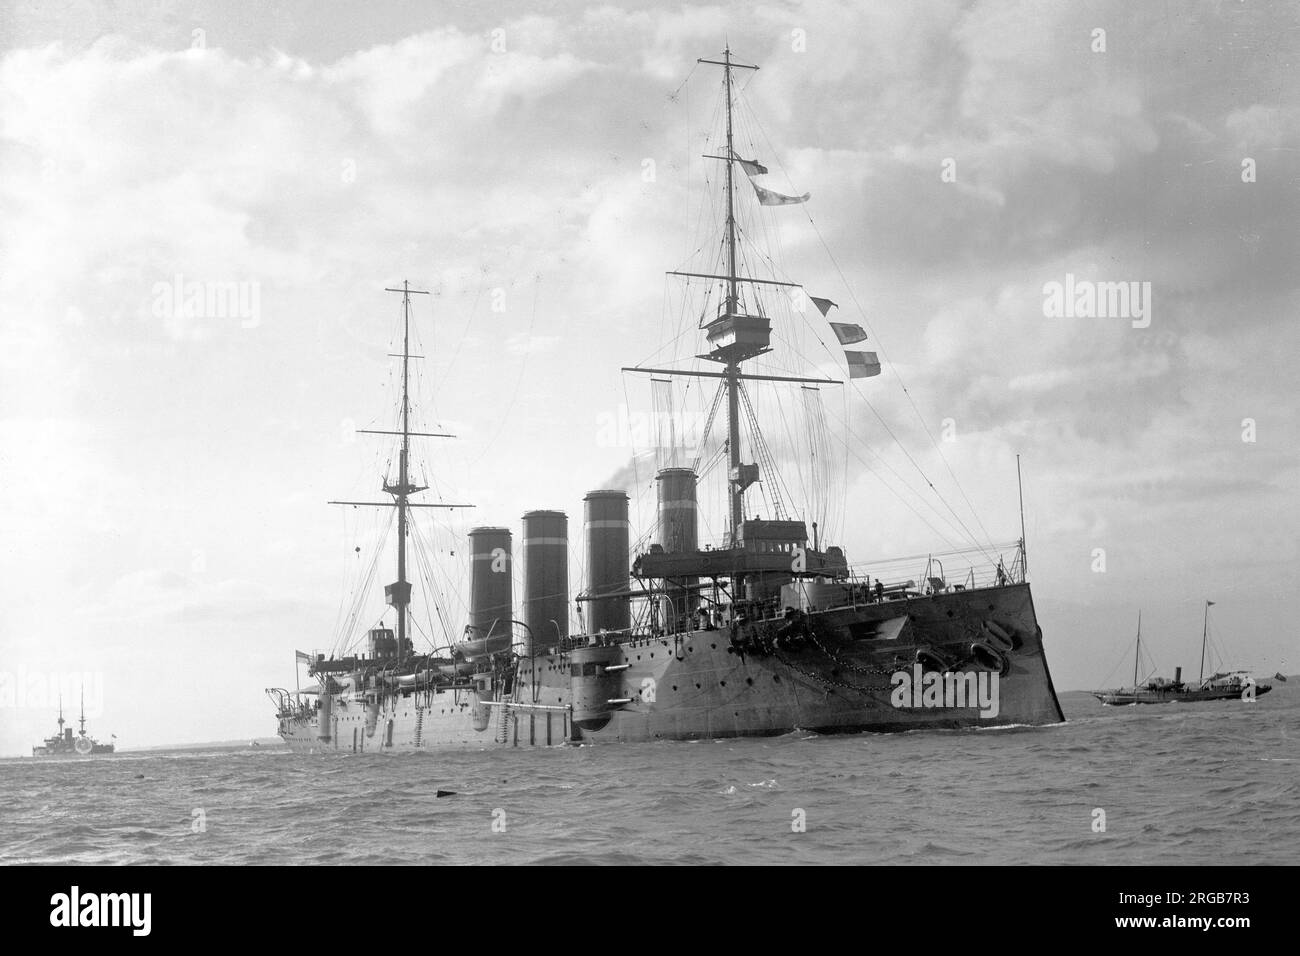 Royal Navy - HMS Leviathan, ein gepanzerter Kreuzer der Drake-Klasse. HMS Leviathan war einer von vier gepanzerten Kreuzschiffen der Drake-Klasse, die um 1900 für die Royal Navy gebaut wurden. Sie wurde nach Abschluss der Arbeiten in die China Station eingewiesen und diente dann 1905-06 in der Mittelmeerflotte. Sie wurde 1907 dem 7. Kreuzer-Geschwader zugeteilt, bevor sie kurz auf Reserve reduziert wurde. Leviathan wurde 1909 für den Einsatz beim 4. Kreuzer-Geschwader wieder in Betrieb genommen, bevor sie 1913 in die Reserve gestellt wurde. Sie wurde Mitte 1914 wieder in Betrieb genommen und zu Beginn der Welt dem 6. Kreuzer-Geschwader der Grand Fleet zugeteilt Stockfoto